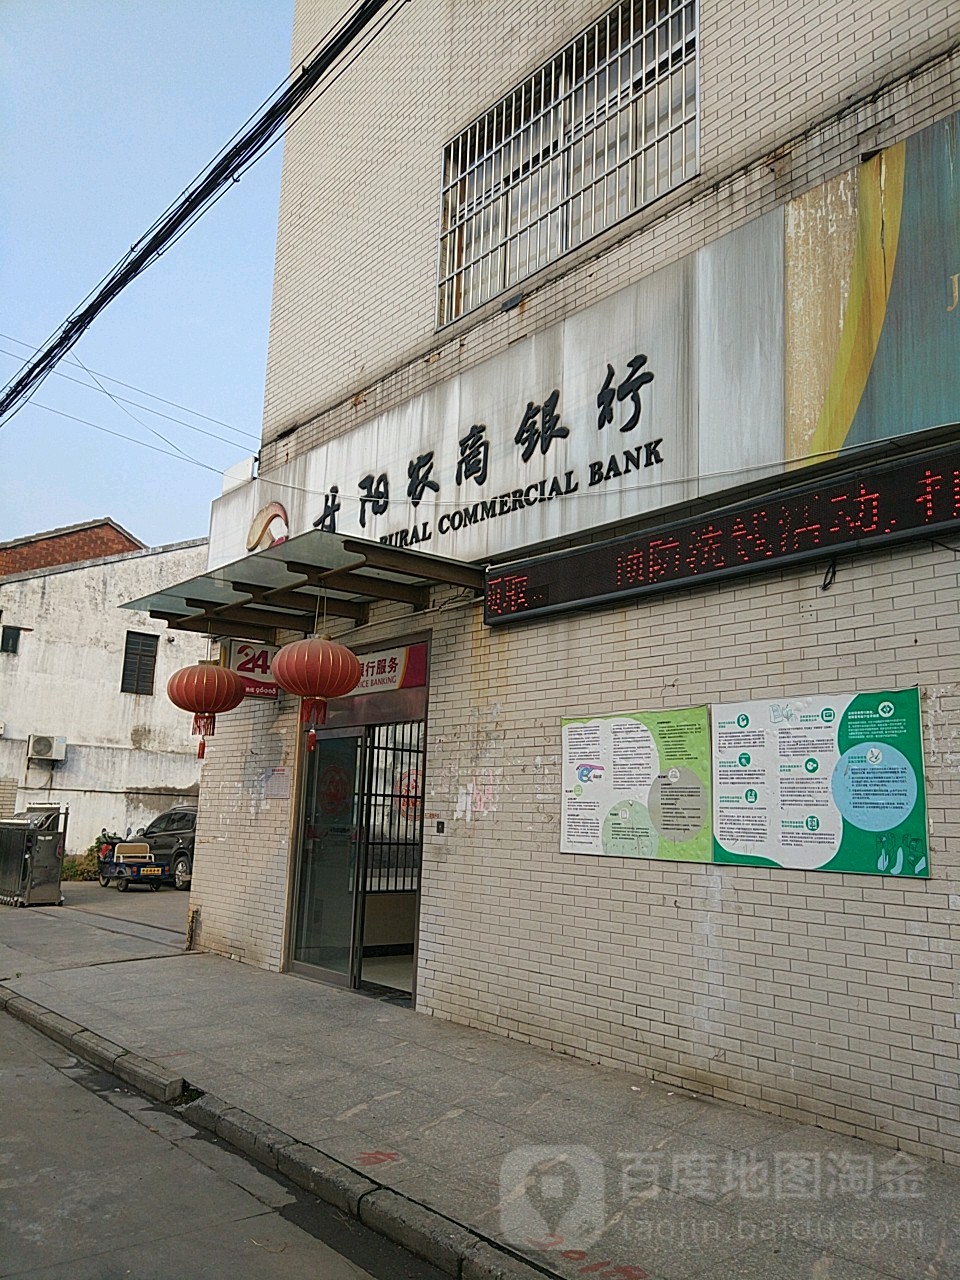 丹陽農商銀行24小時自助銀行服務